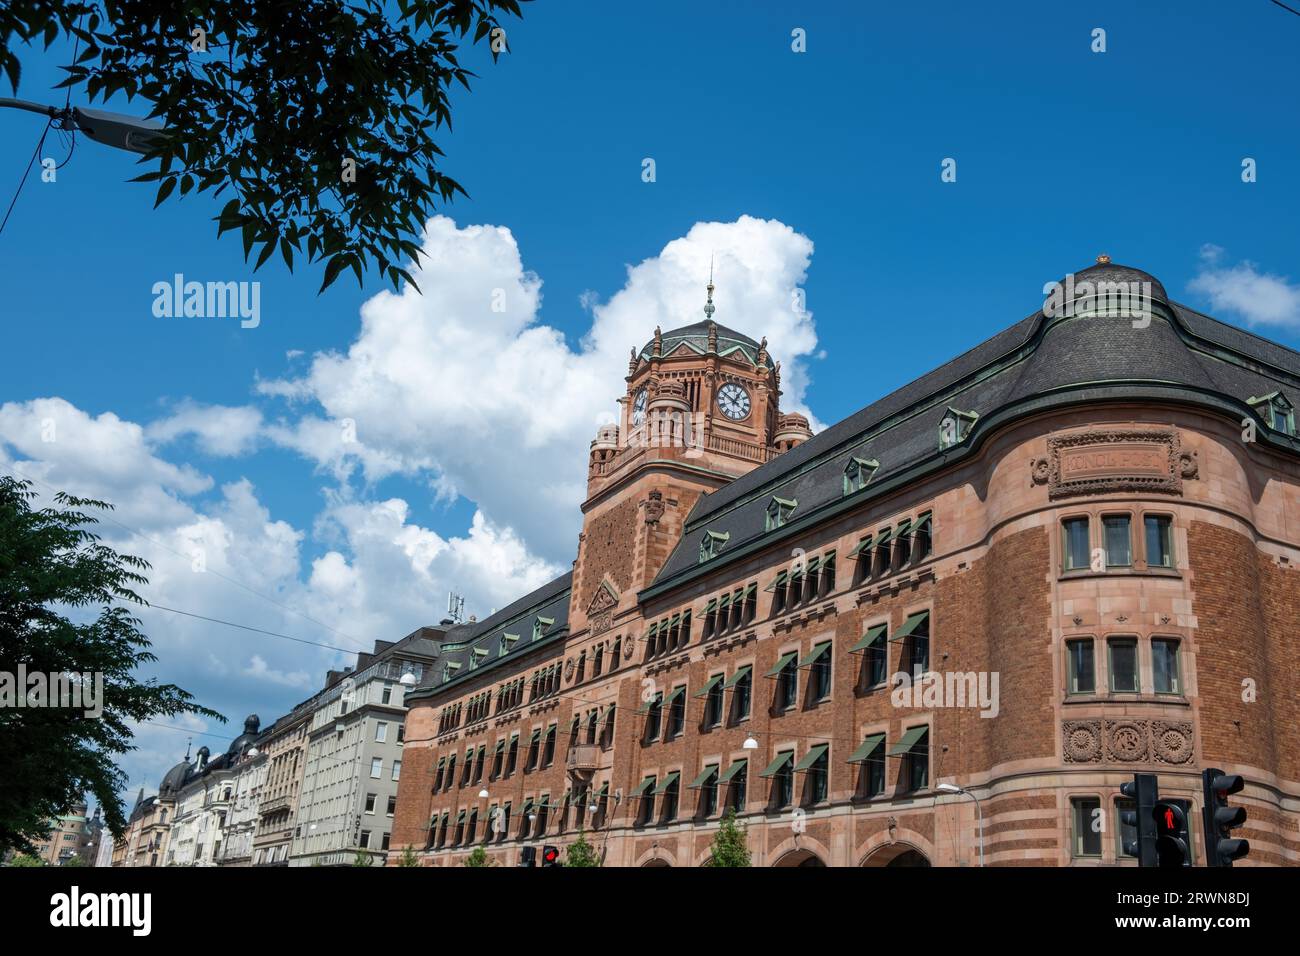 Stoccolma Svezia, edificio dell'ufficio postale centrale, parte superiore del Centralposthuset. Patrimonio dell'antica architettura, torre con cupola e orologio. Foto Stock